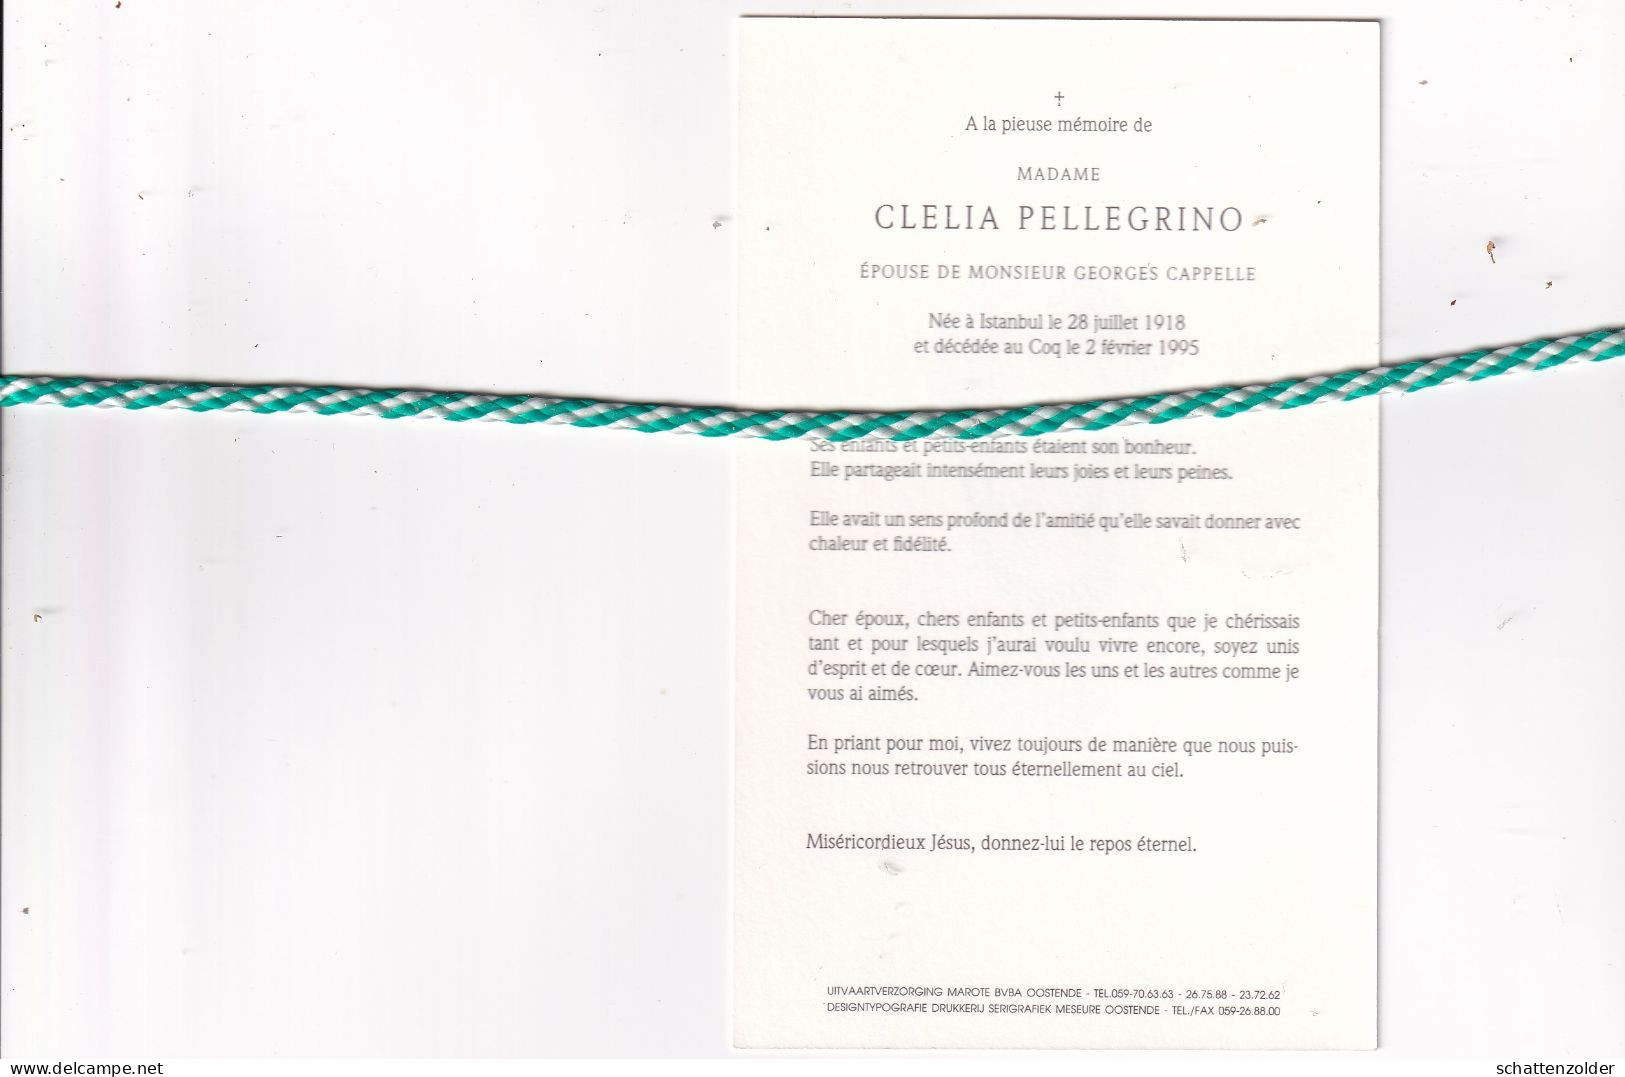 Clelia Pellegrino-Cappelle, Istanbul 1918, Coq 1995. Foto - Esquela